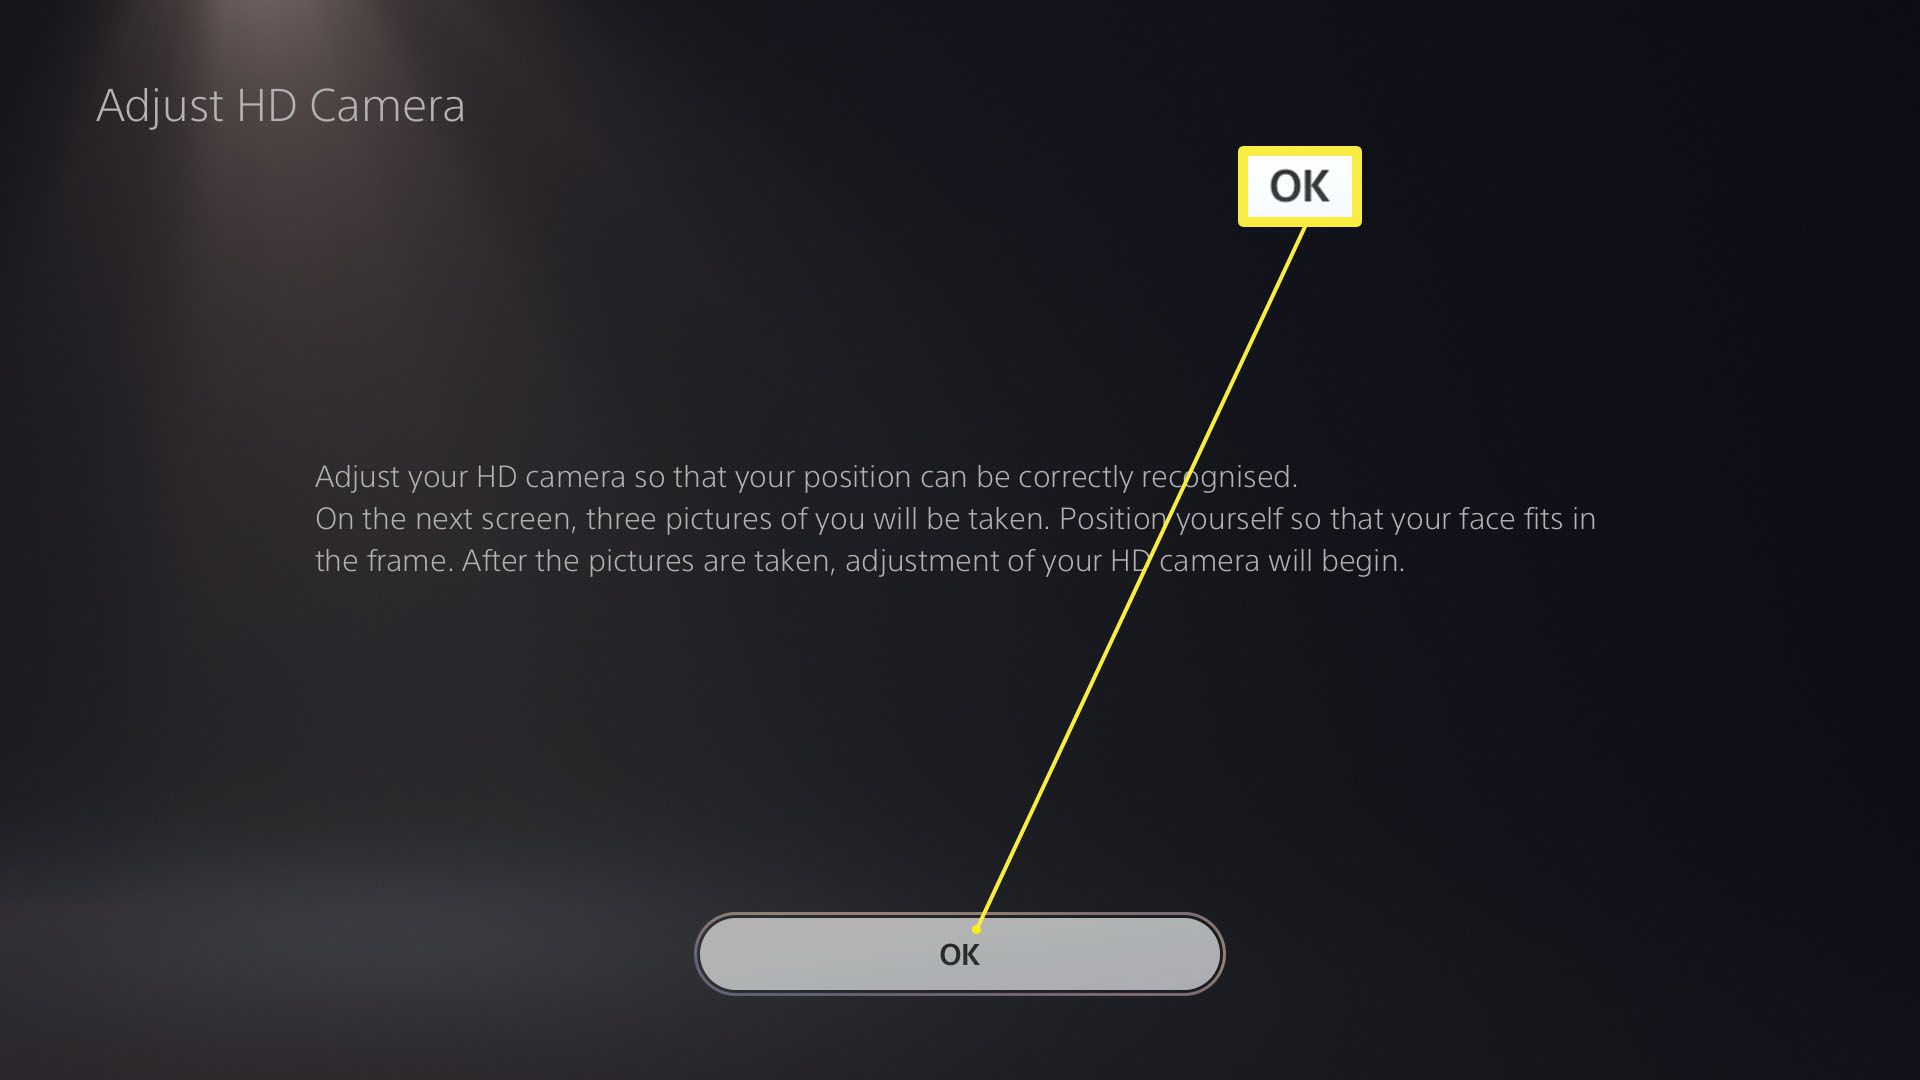 PlayStation 5 Upravte nastavení kamery HD se zvýrazněným tlačítkem OK